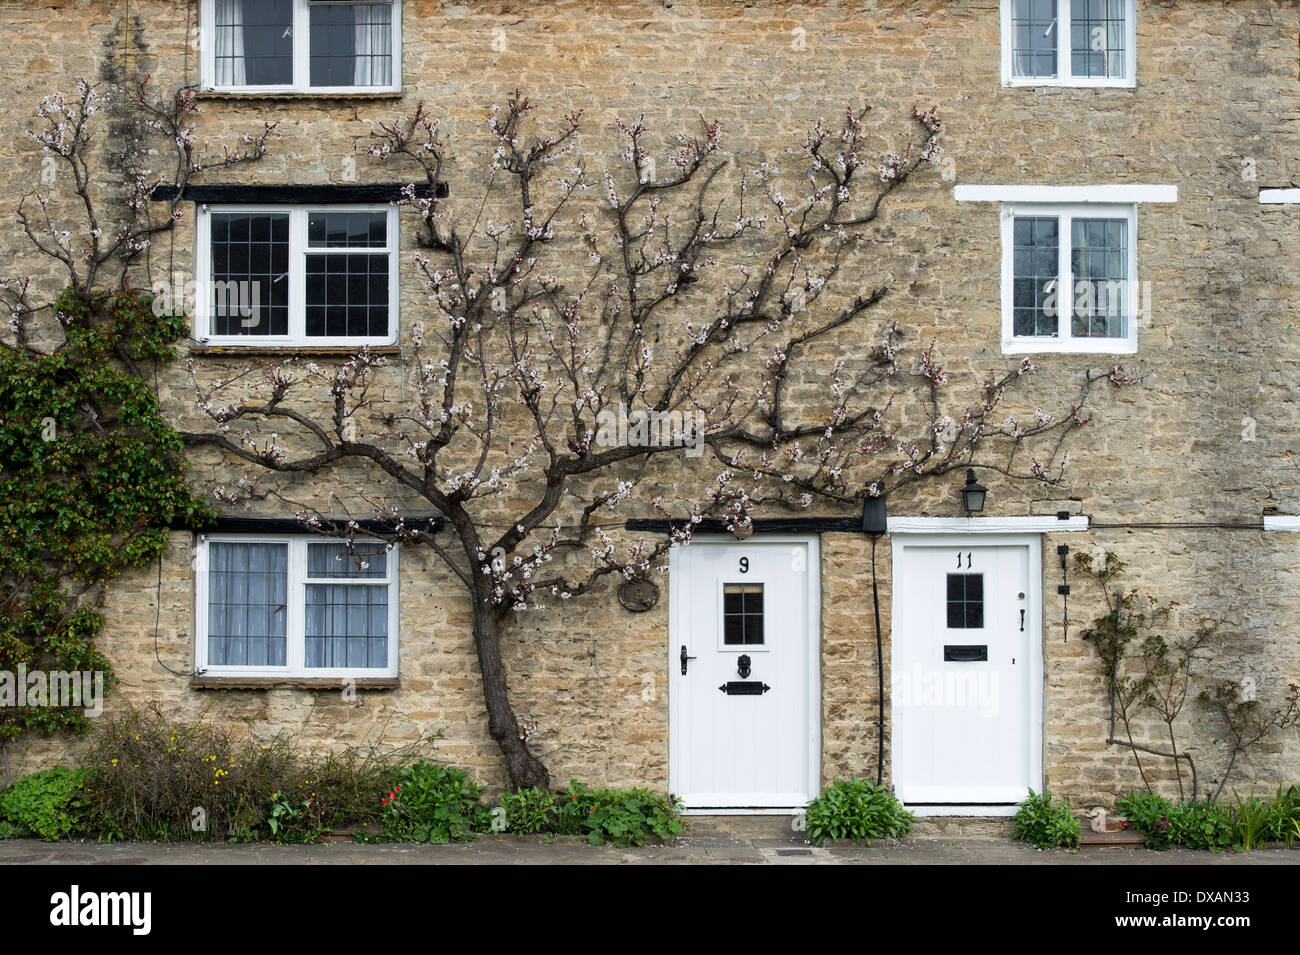 Prunus Armeniaca. Ventilator ausgebildet Aprikose Baum gegen eine Wand Steinhaus. Aynho, Northamptonshire, England Stockfoto